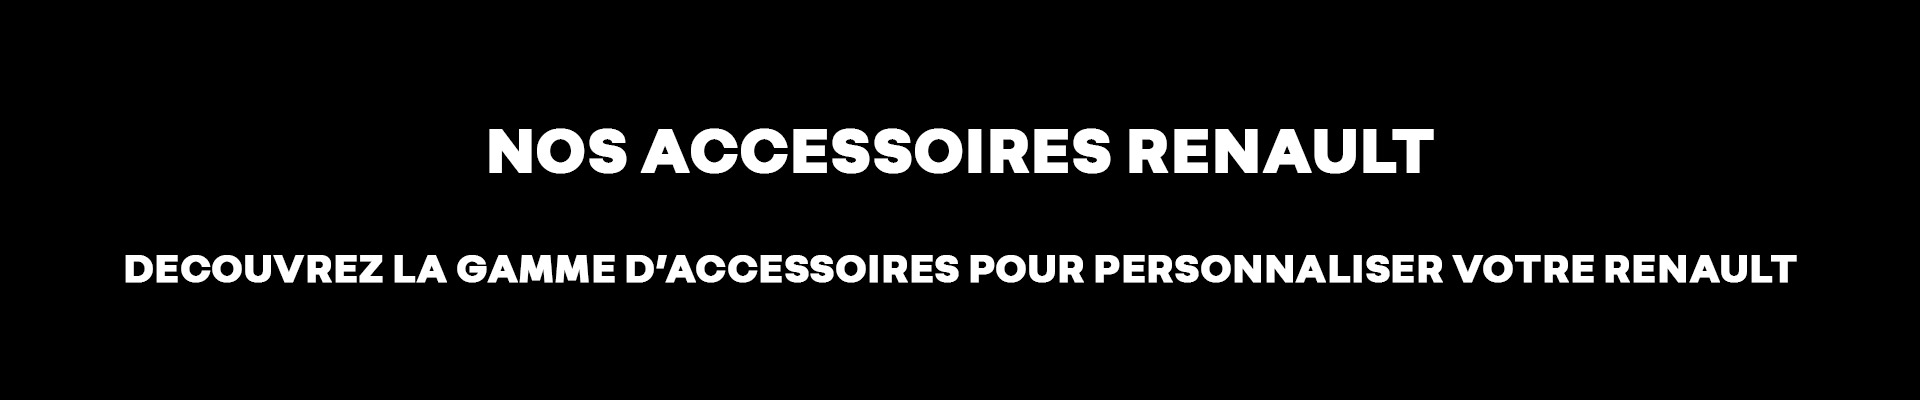 Accessoires Renault Chatou